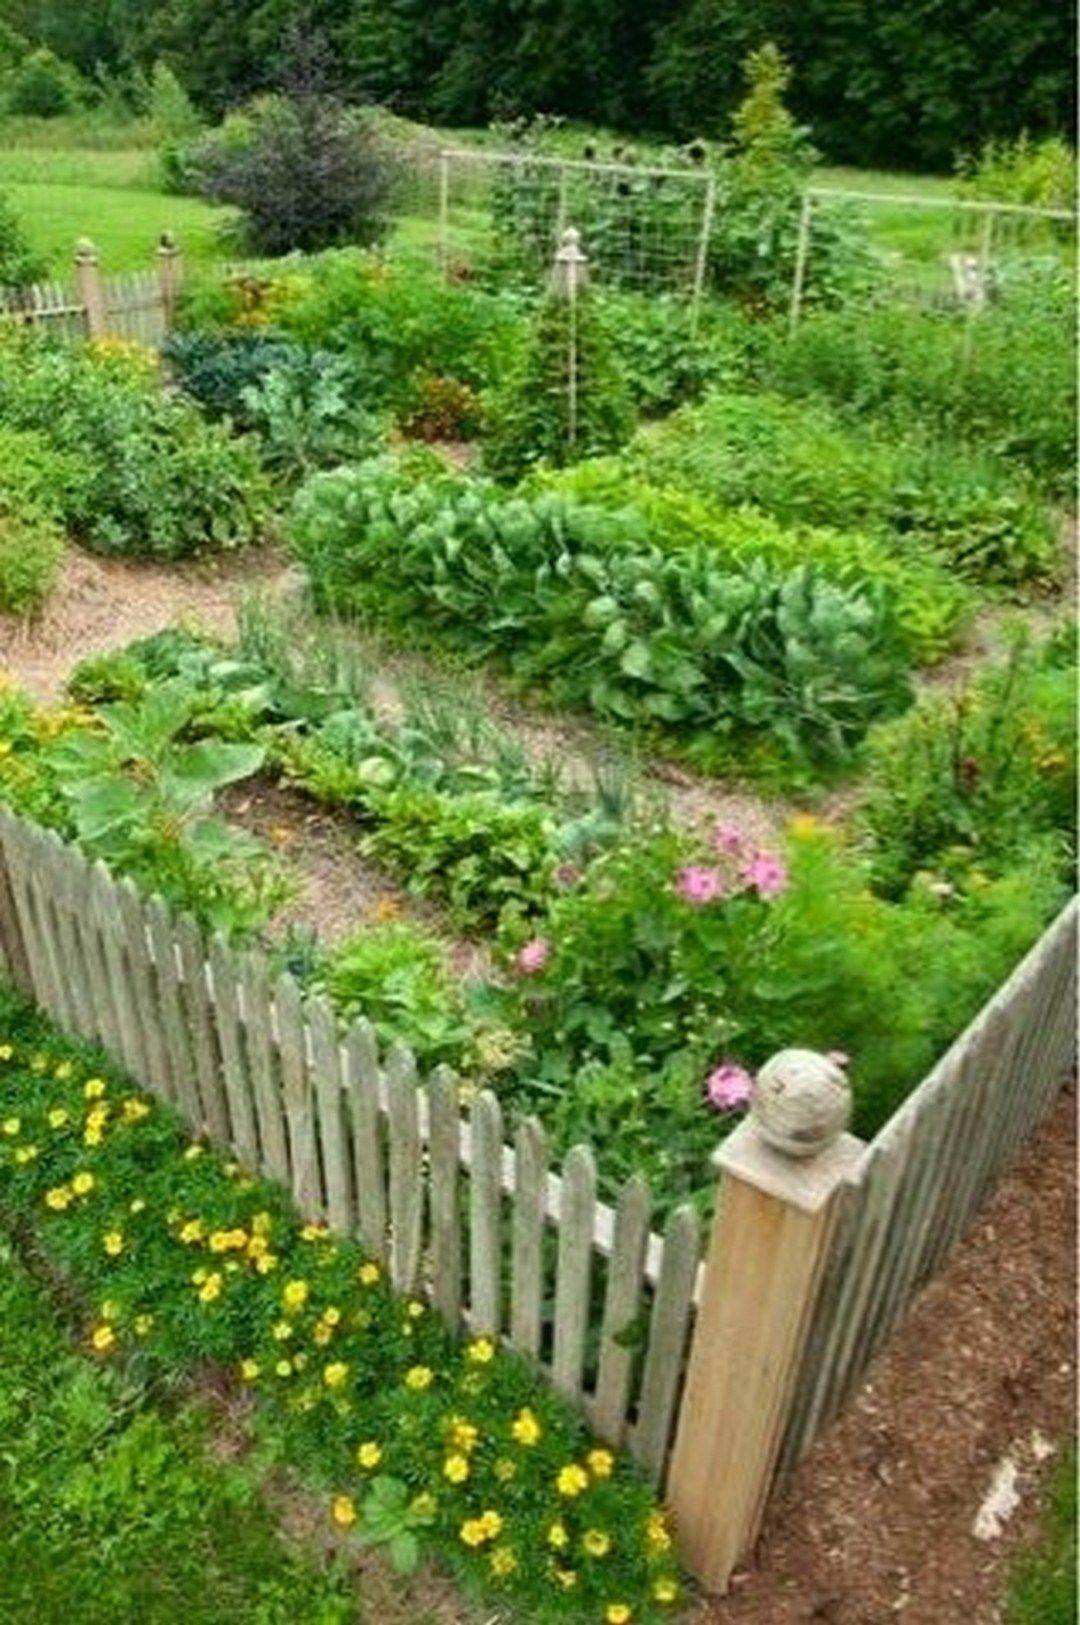 Garden Craft Ideas